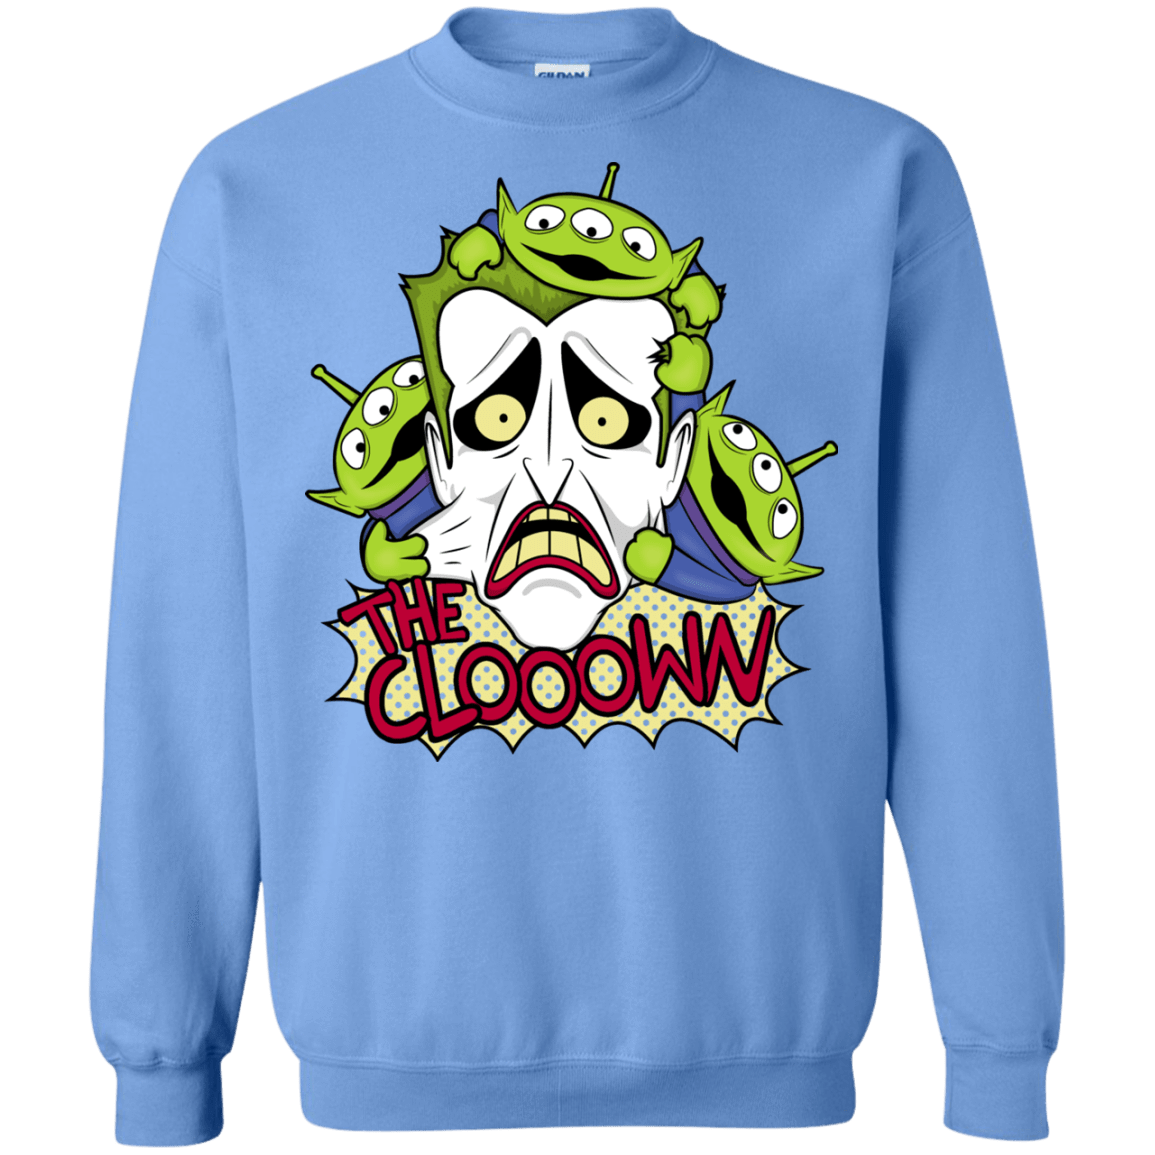 Sweatshirts Carolina Blue / Small The clooown Crewneck Sweatshirt